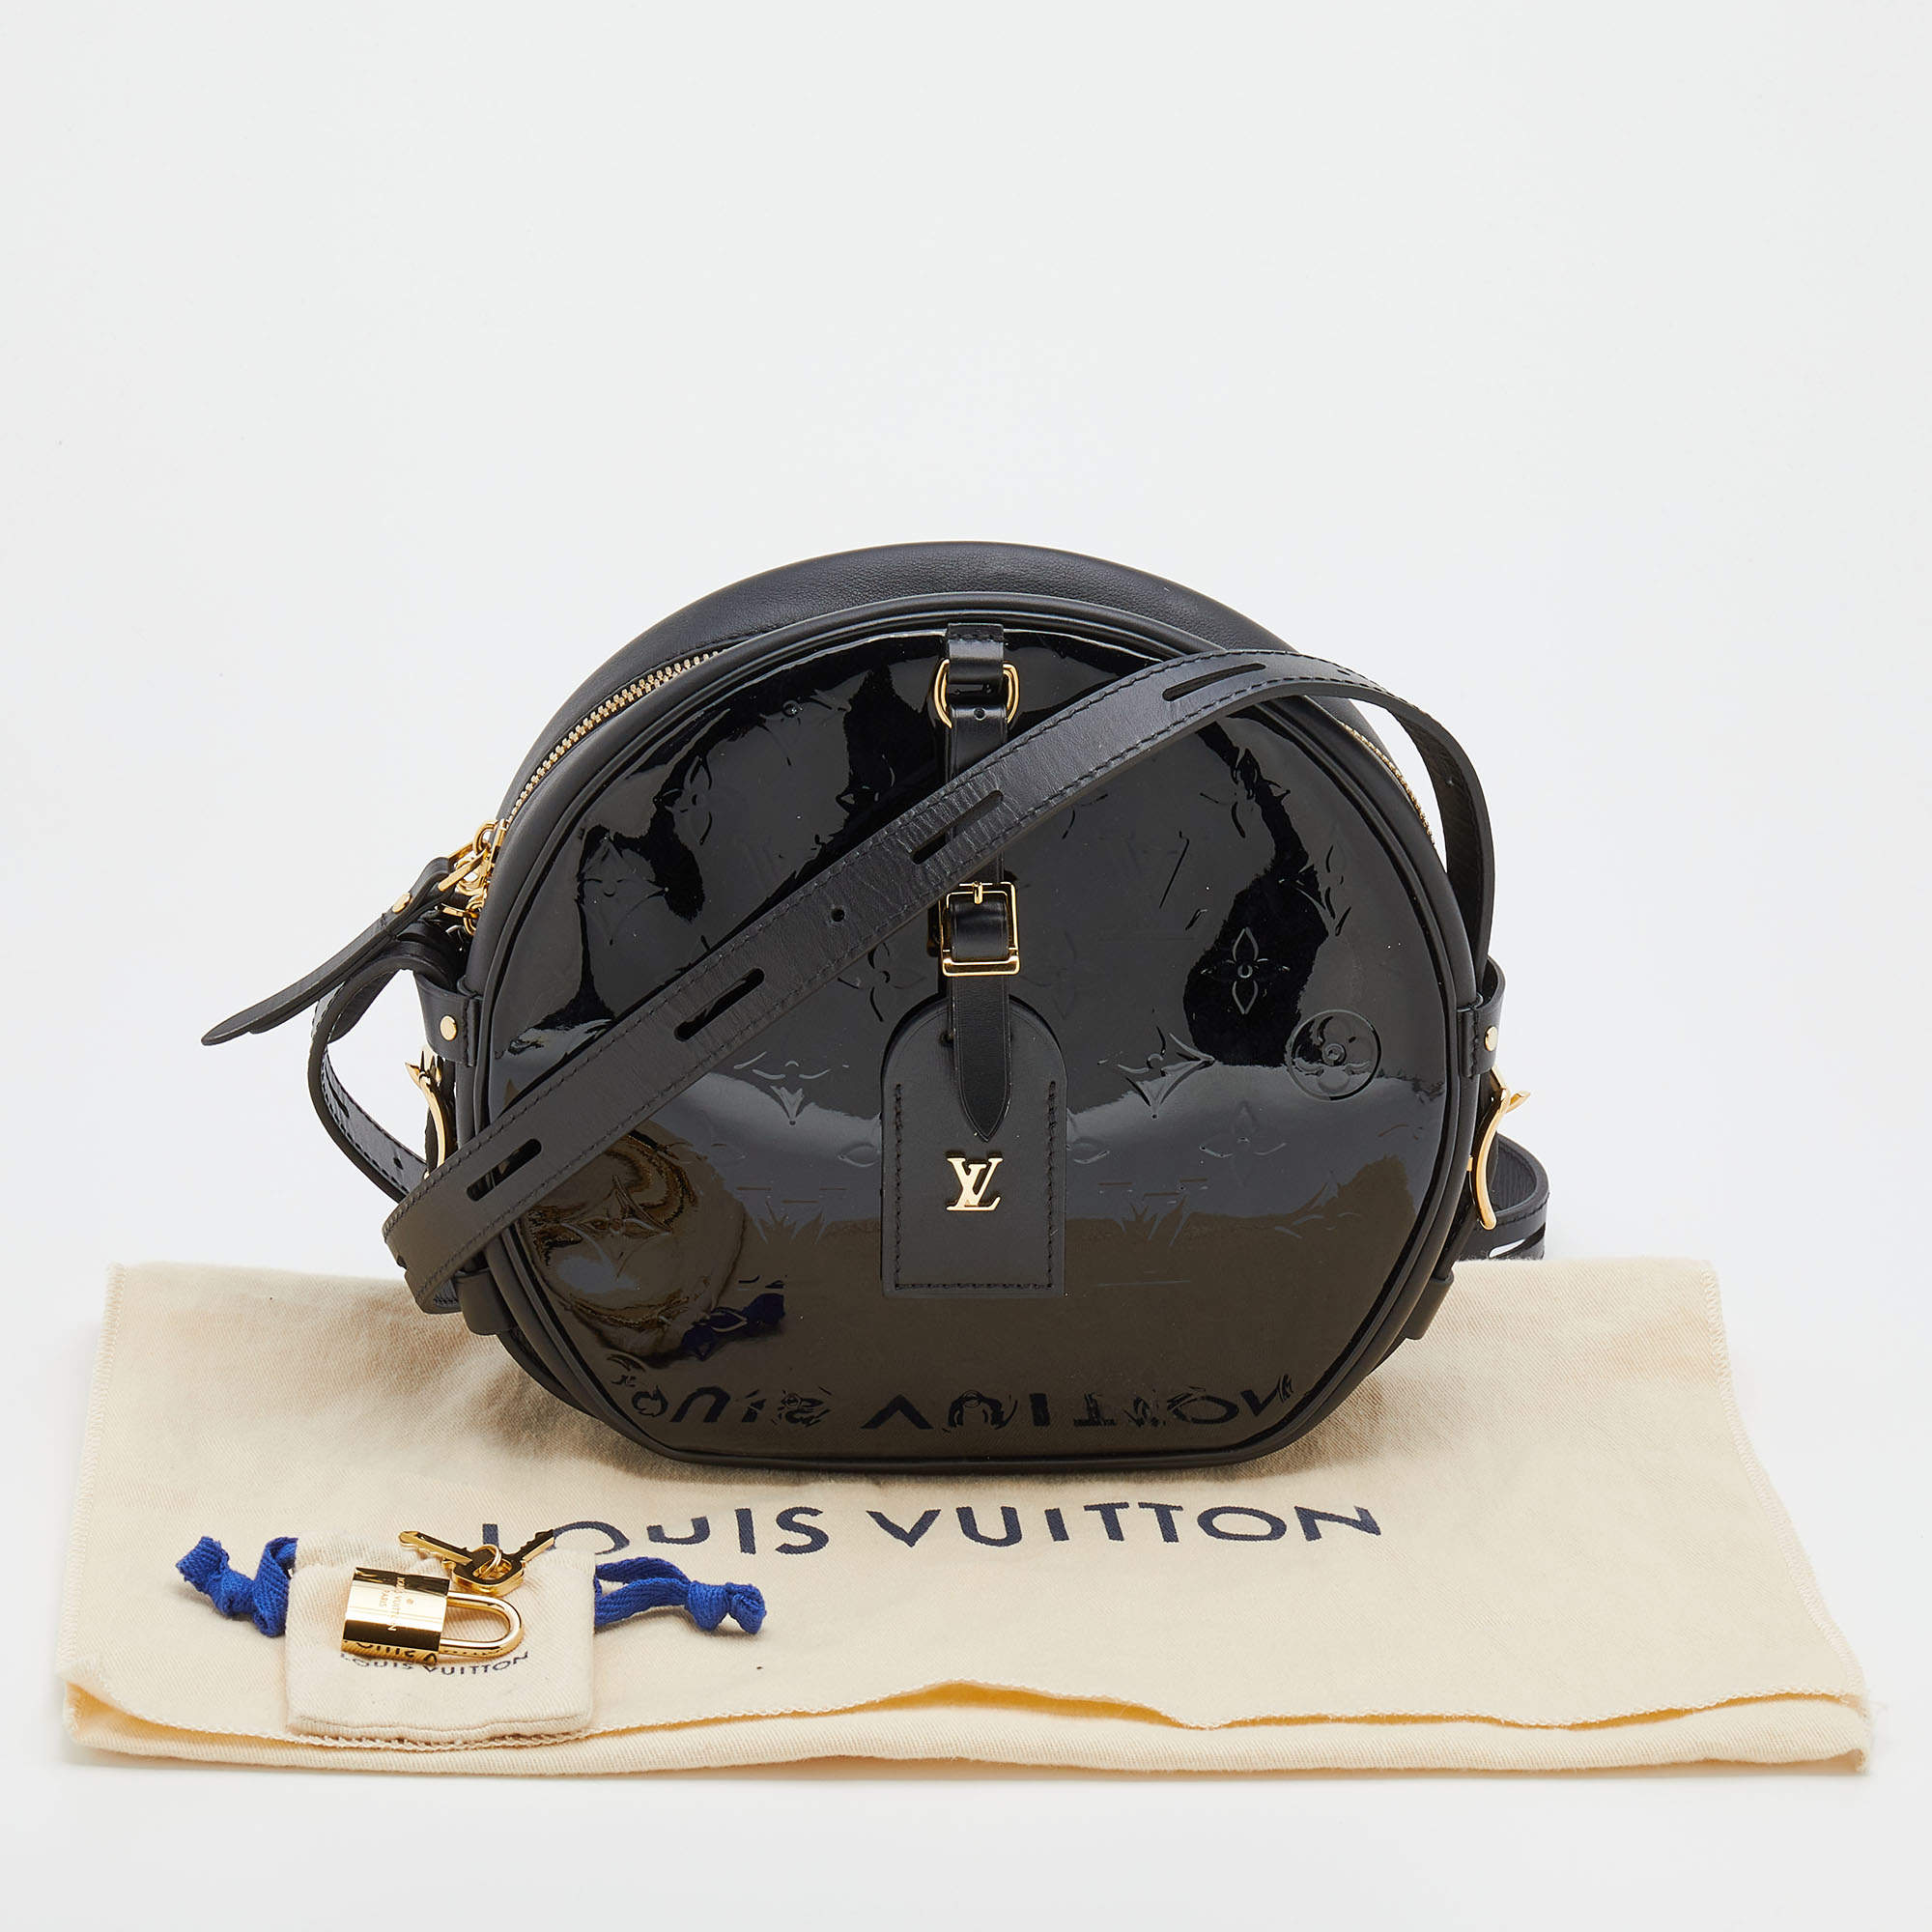 Louis Vuitton - Authenticated Boîte Chapeau Souple Handbag - Cloth Multicolour for Women, Never Worn